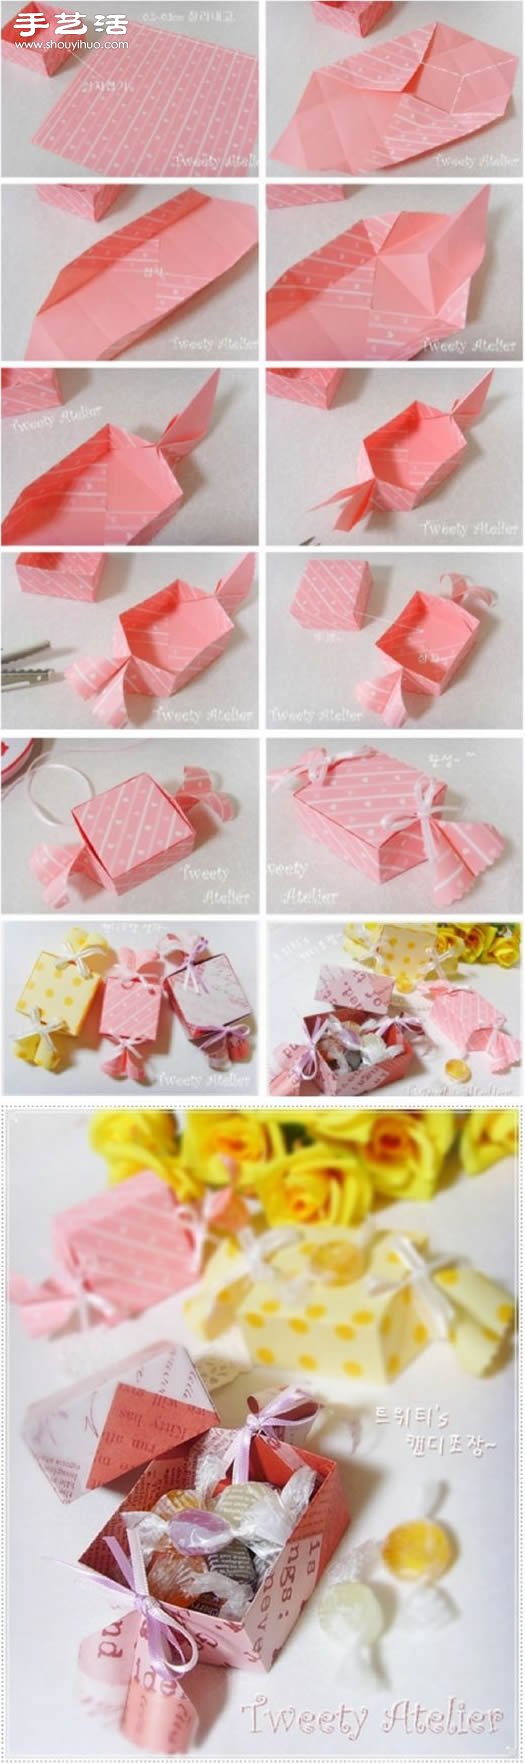 可爱系方形糖果包装盒折纸方法图解教程